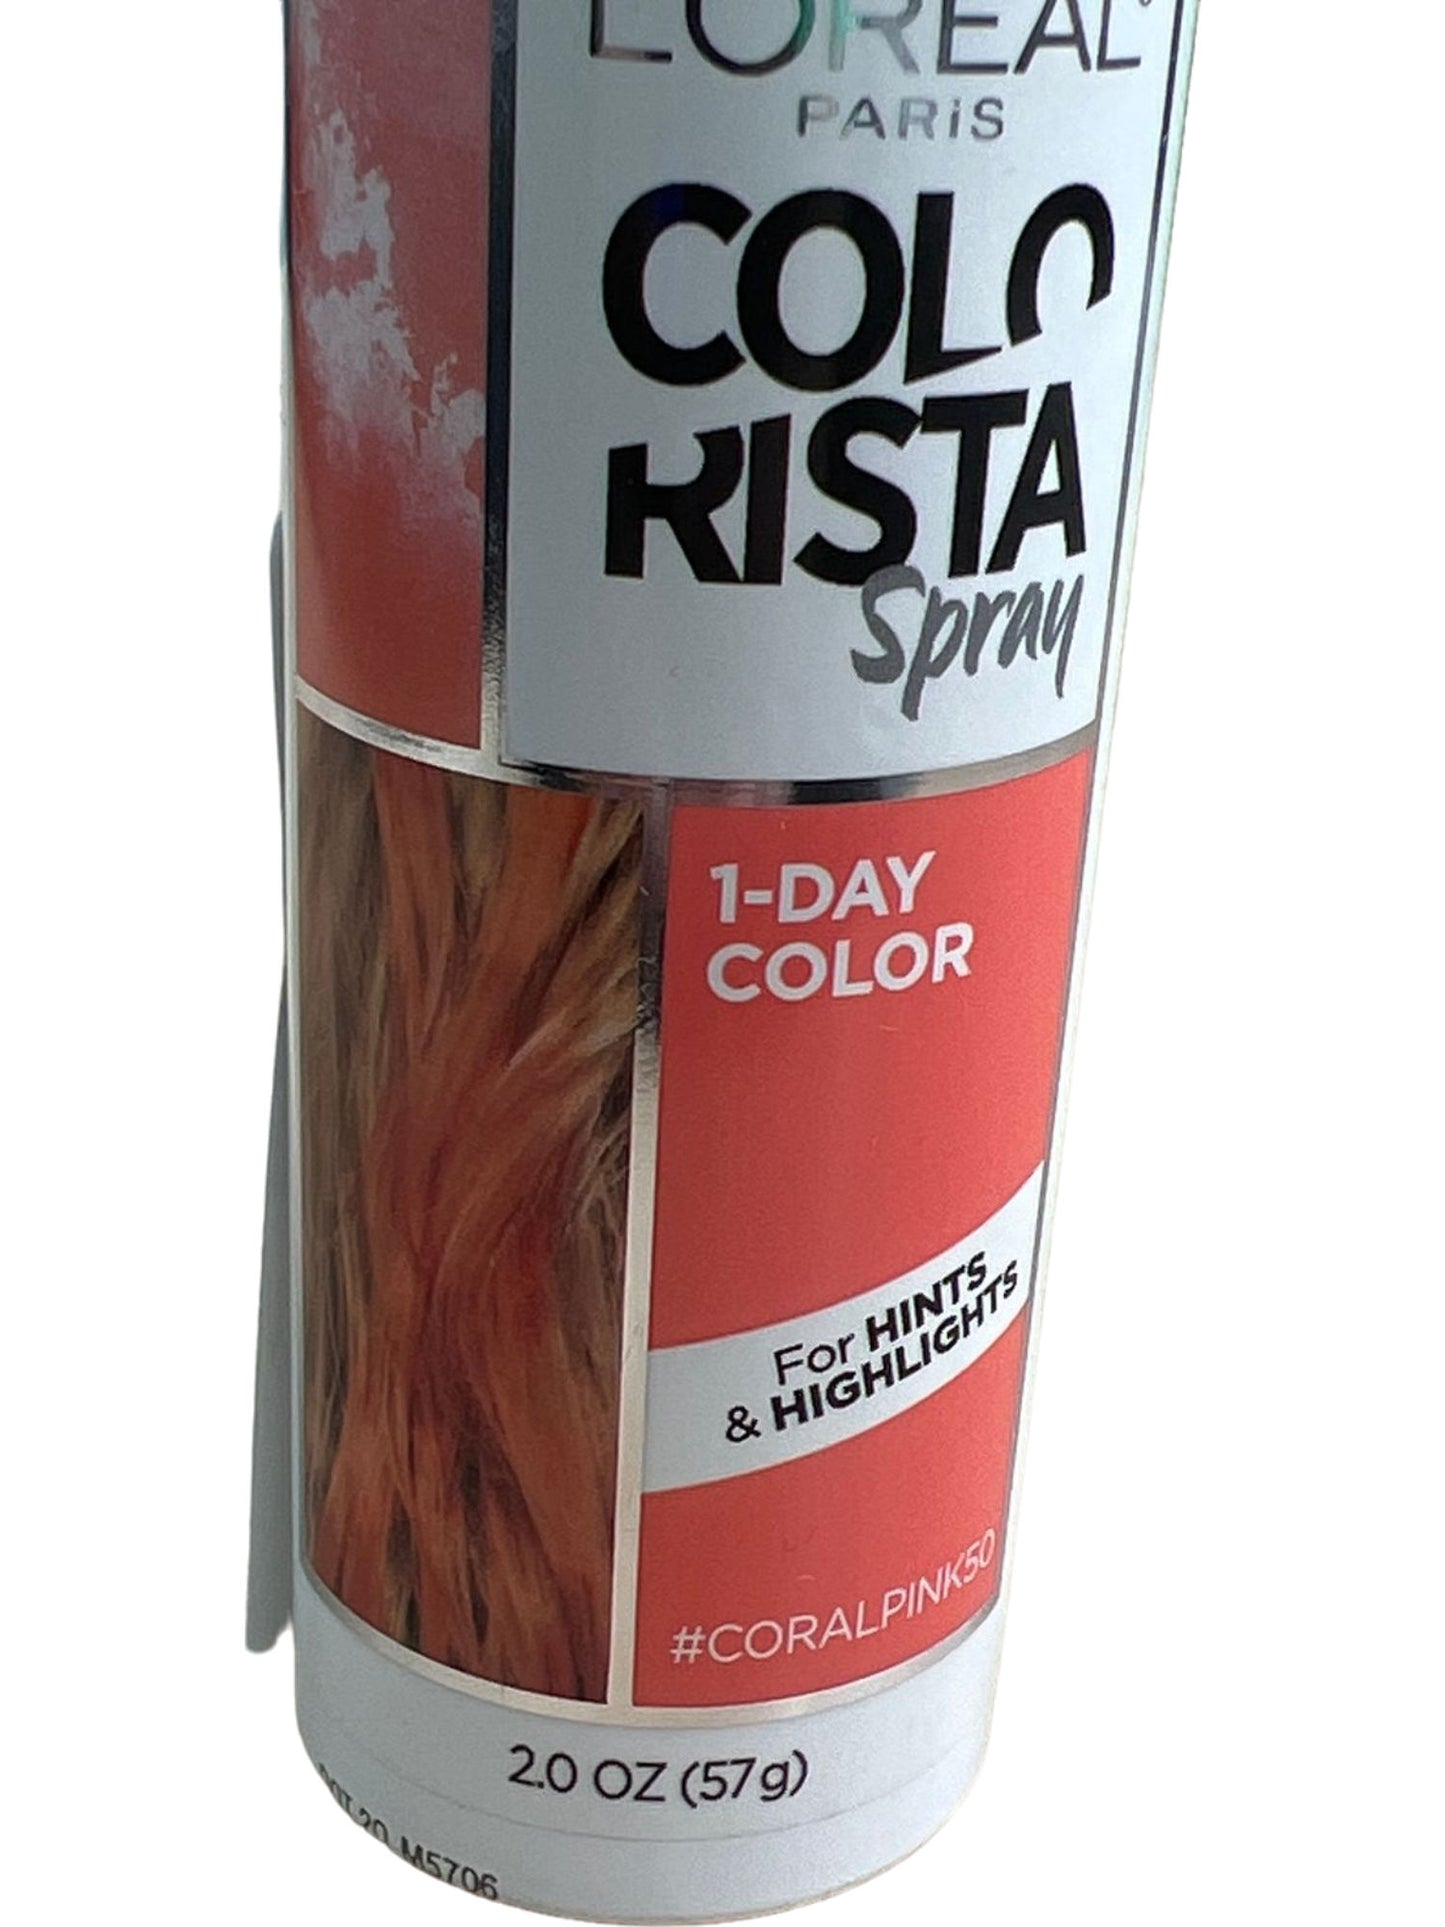 L'OREAL Paris Colorista 1-Day Hair Color Spray Coral Pink 2 Oz